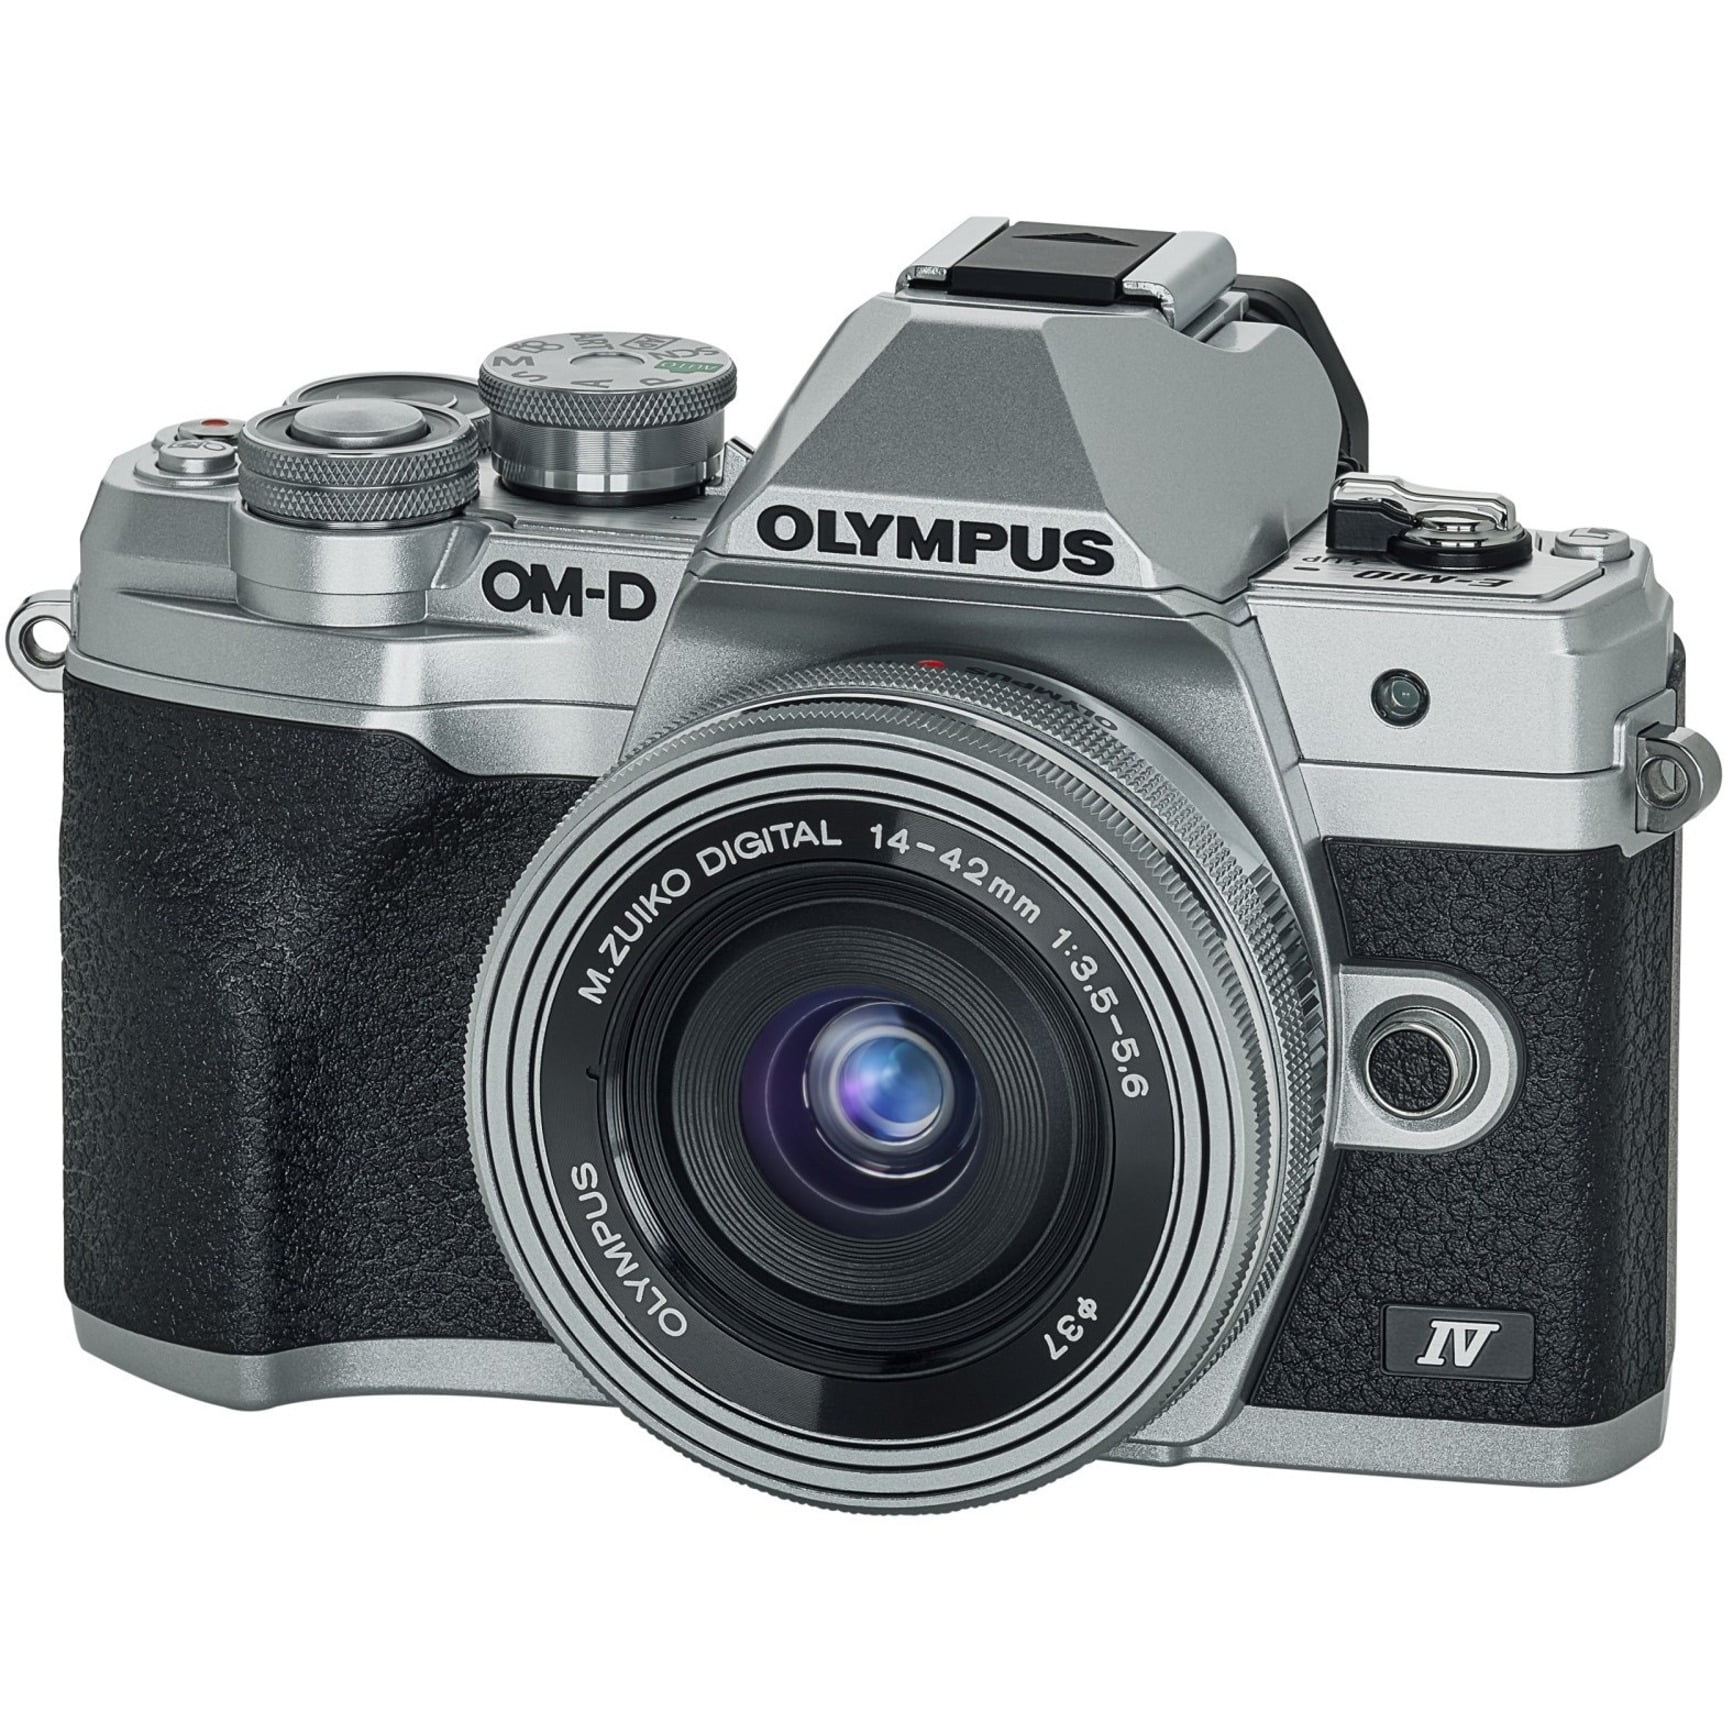 新品/取寄せ OLYMPUS OM-D デジタルカメラ